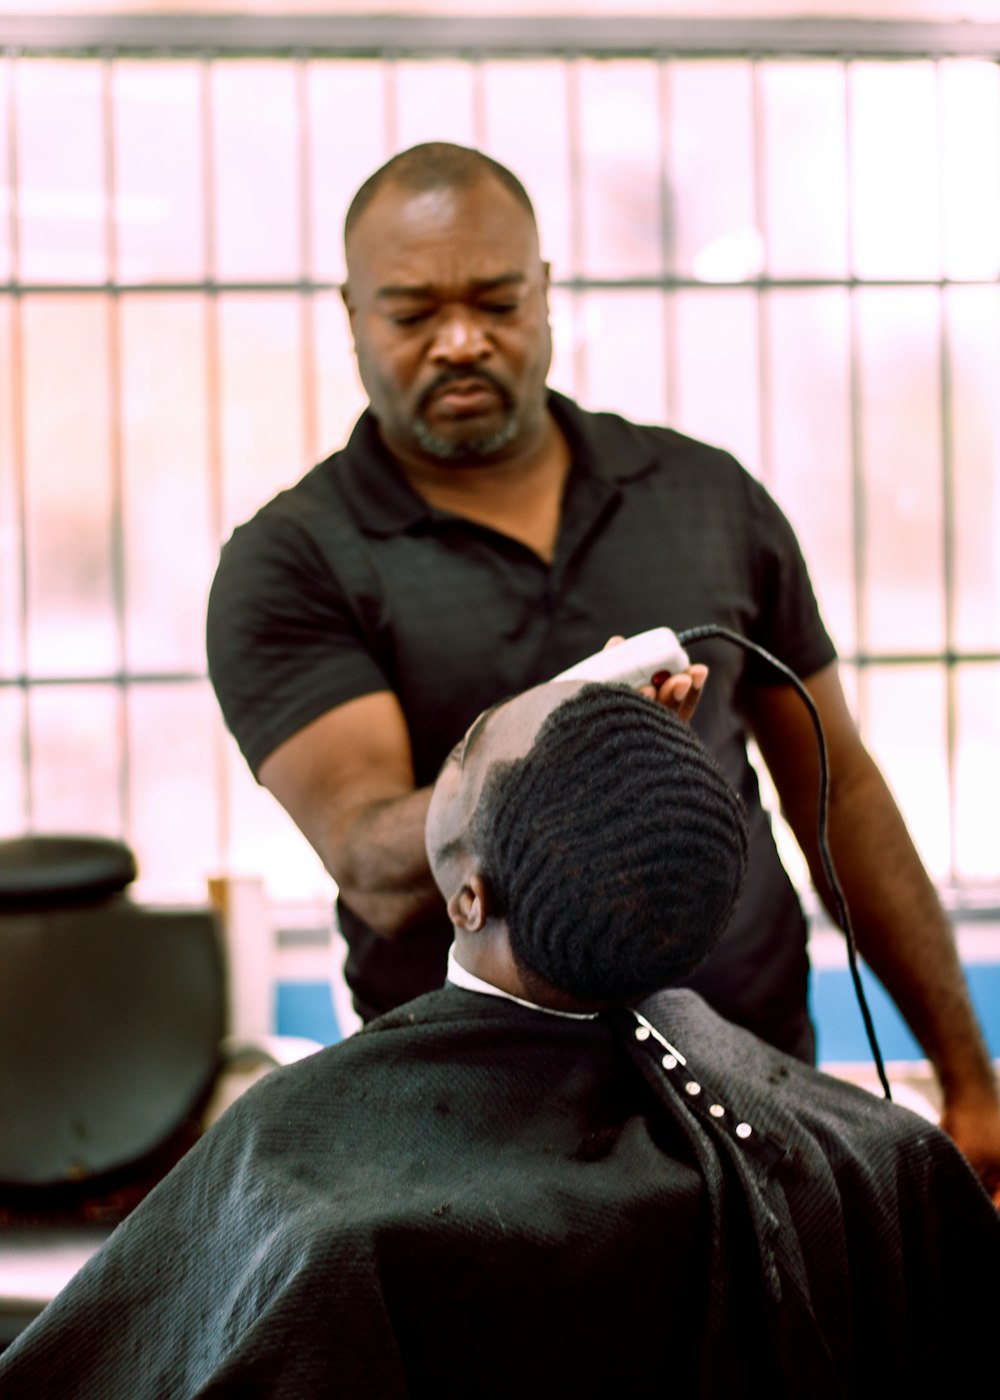 Un homme coupe les cheveux d’un autre homme dans un salon de coiffure